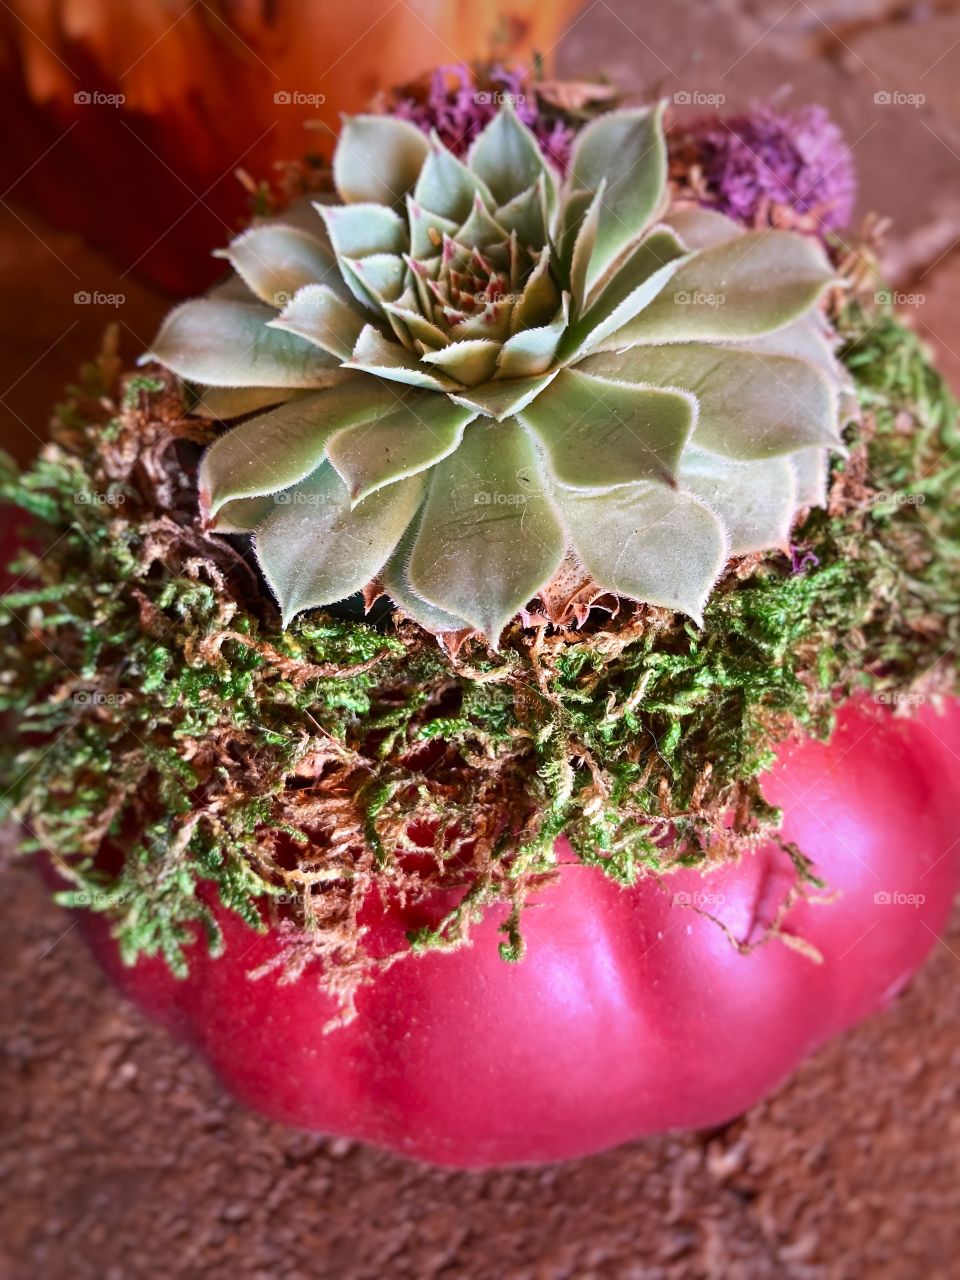 Succulent in a Red Pot